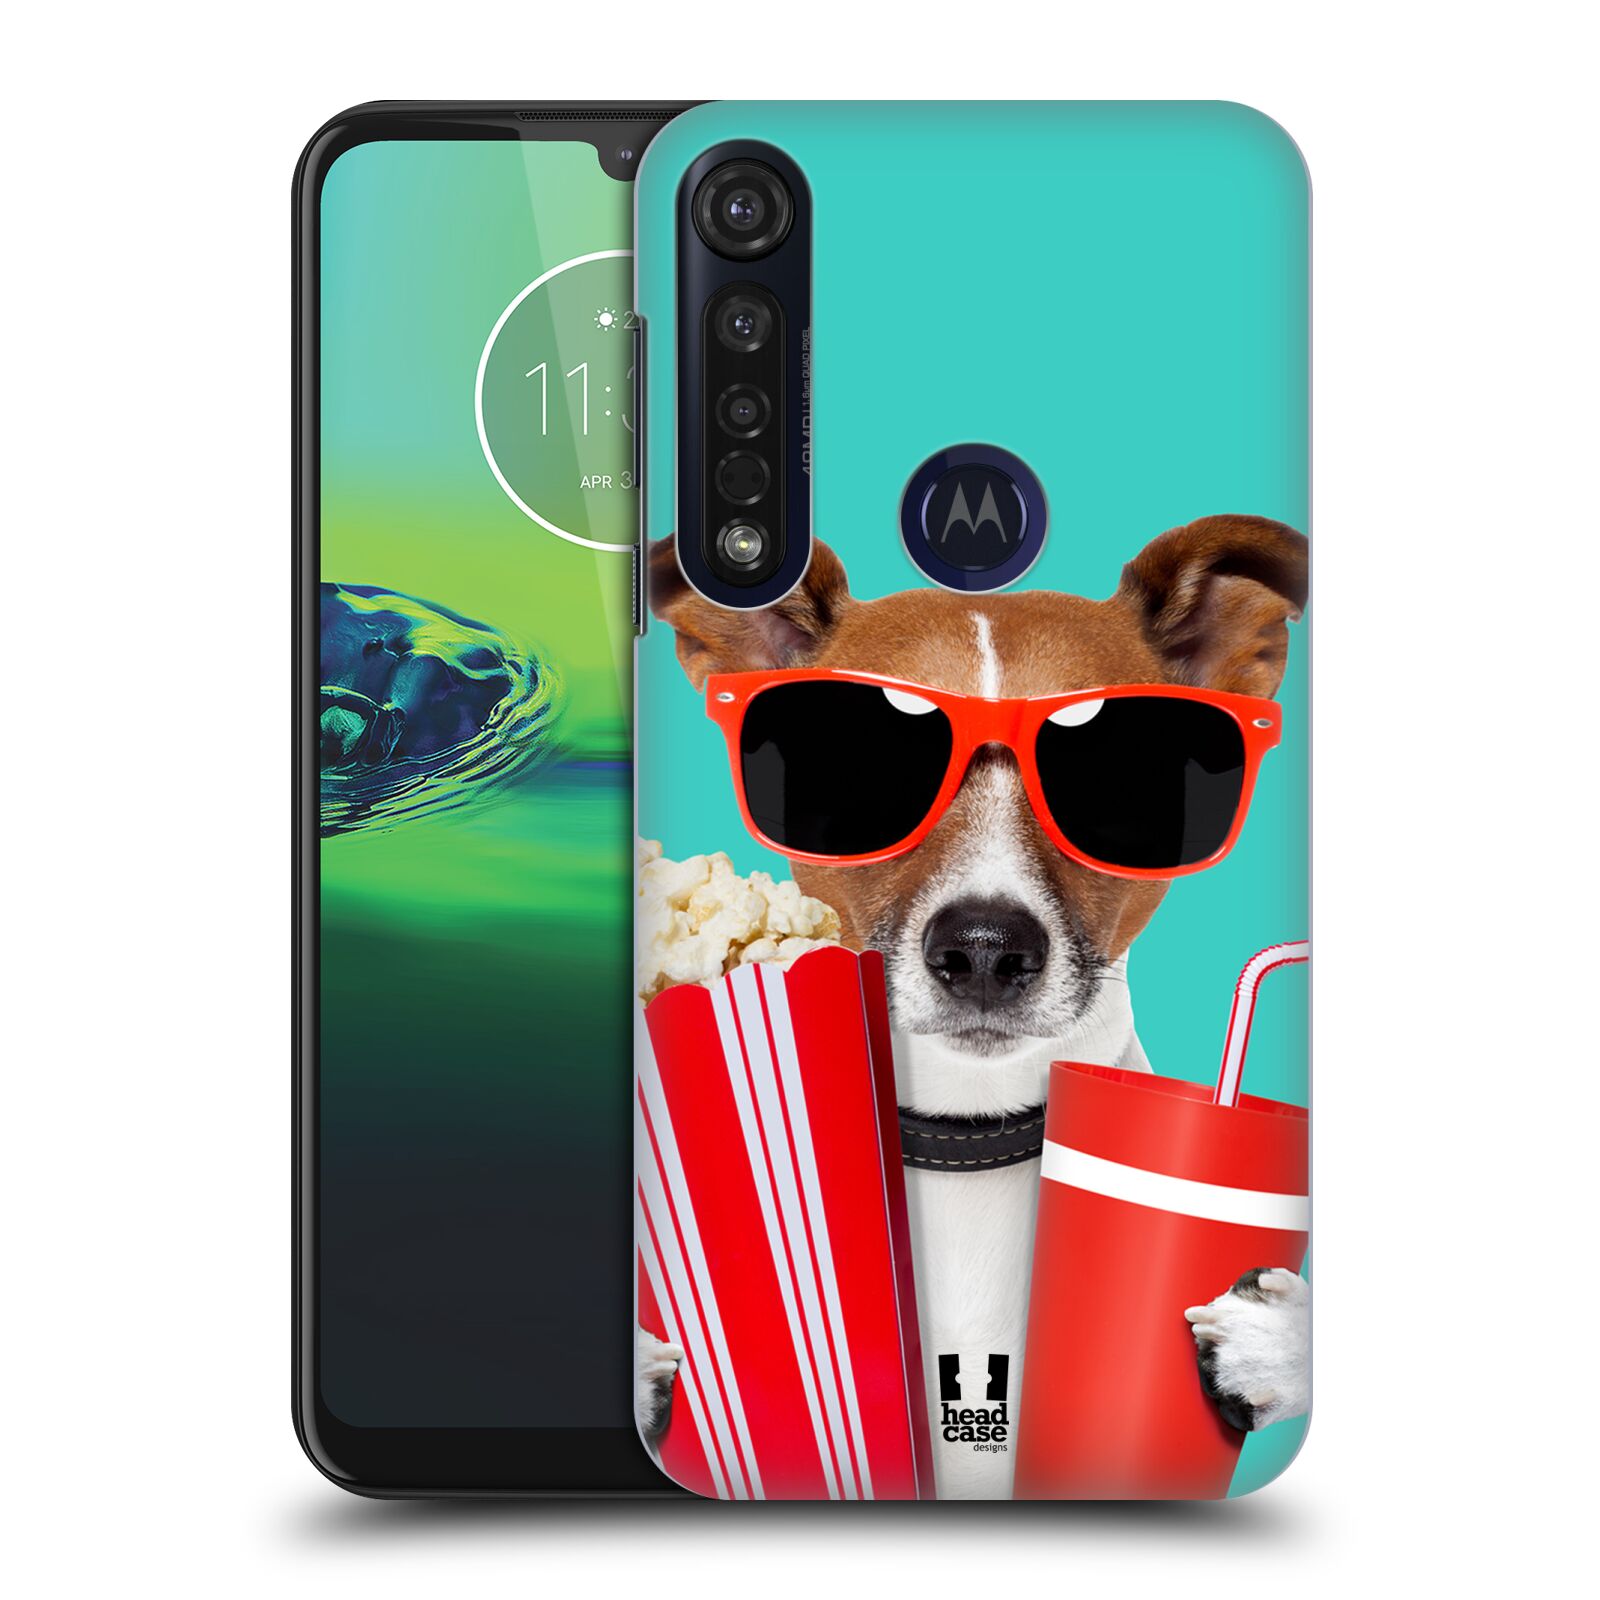 Pouzdro na mobil Motorola Moto G8 PLUS - HEAD CASE - vzor Legrační zvířátka pejsek v kině s popkornem